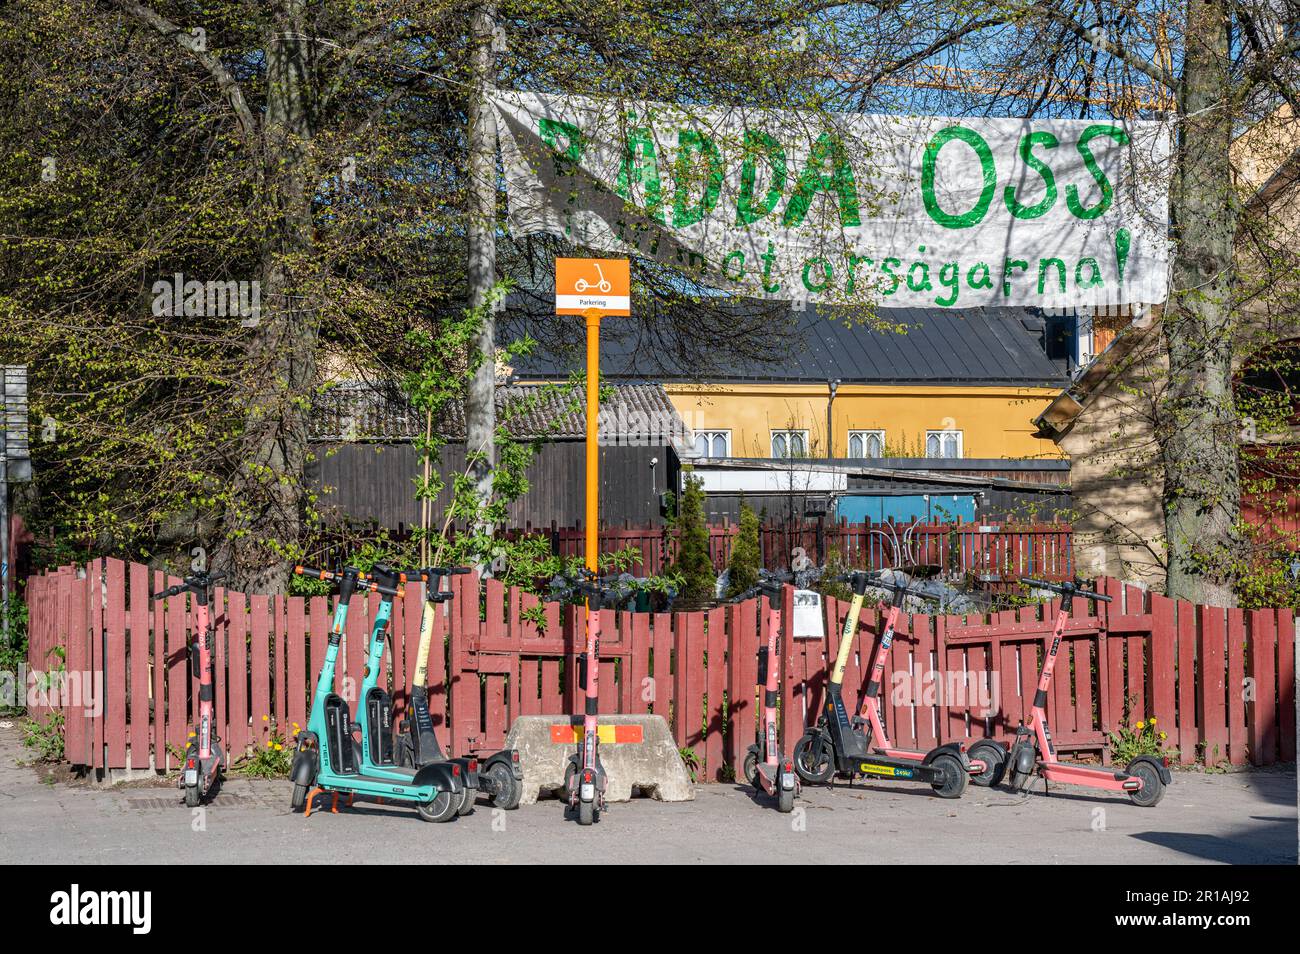 Des militants écologistes protestent contre un projet de construction à Norrköping, en Suède, avec une bannière sur la place Gossip disant sauver les arbres. Banque D'Images